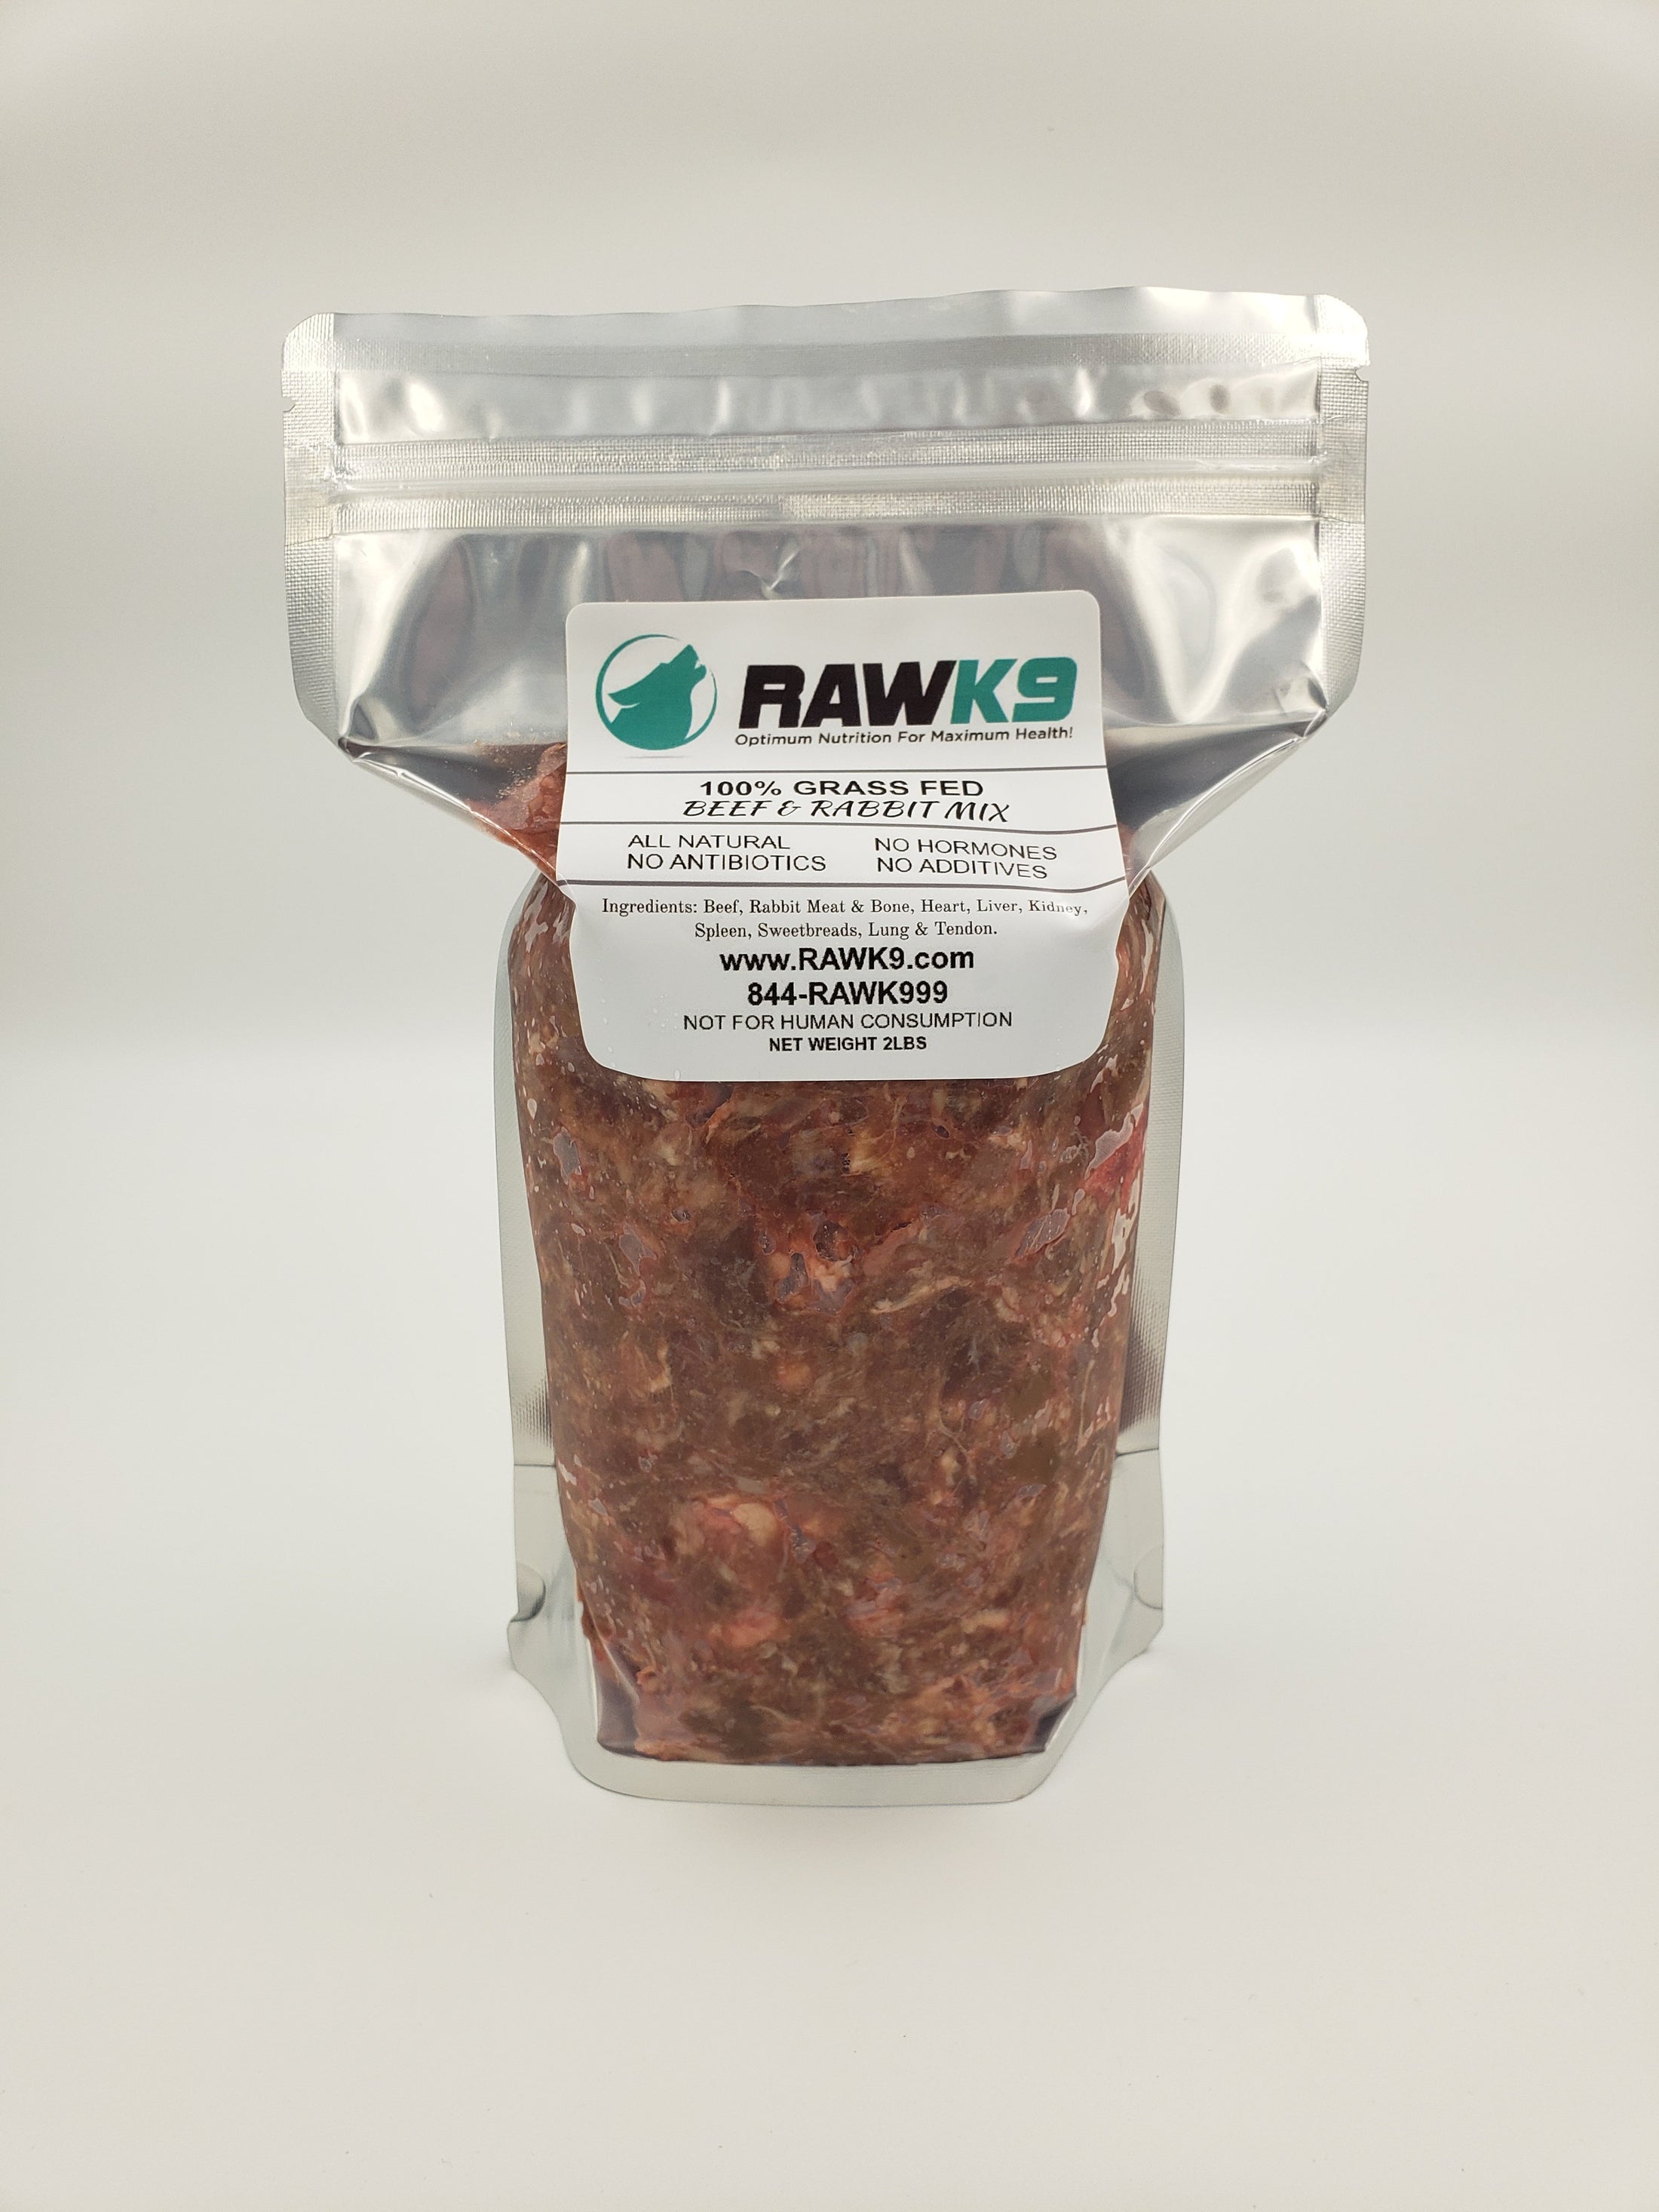 Raw K9 Beef & Rabbit Mix Raw Pet Food - 2 lb